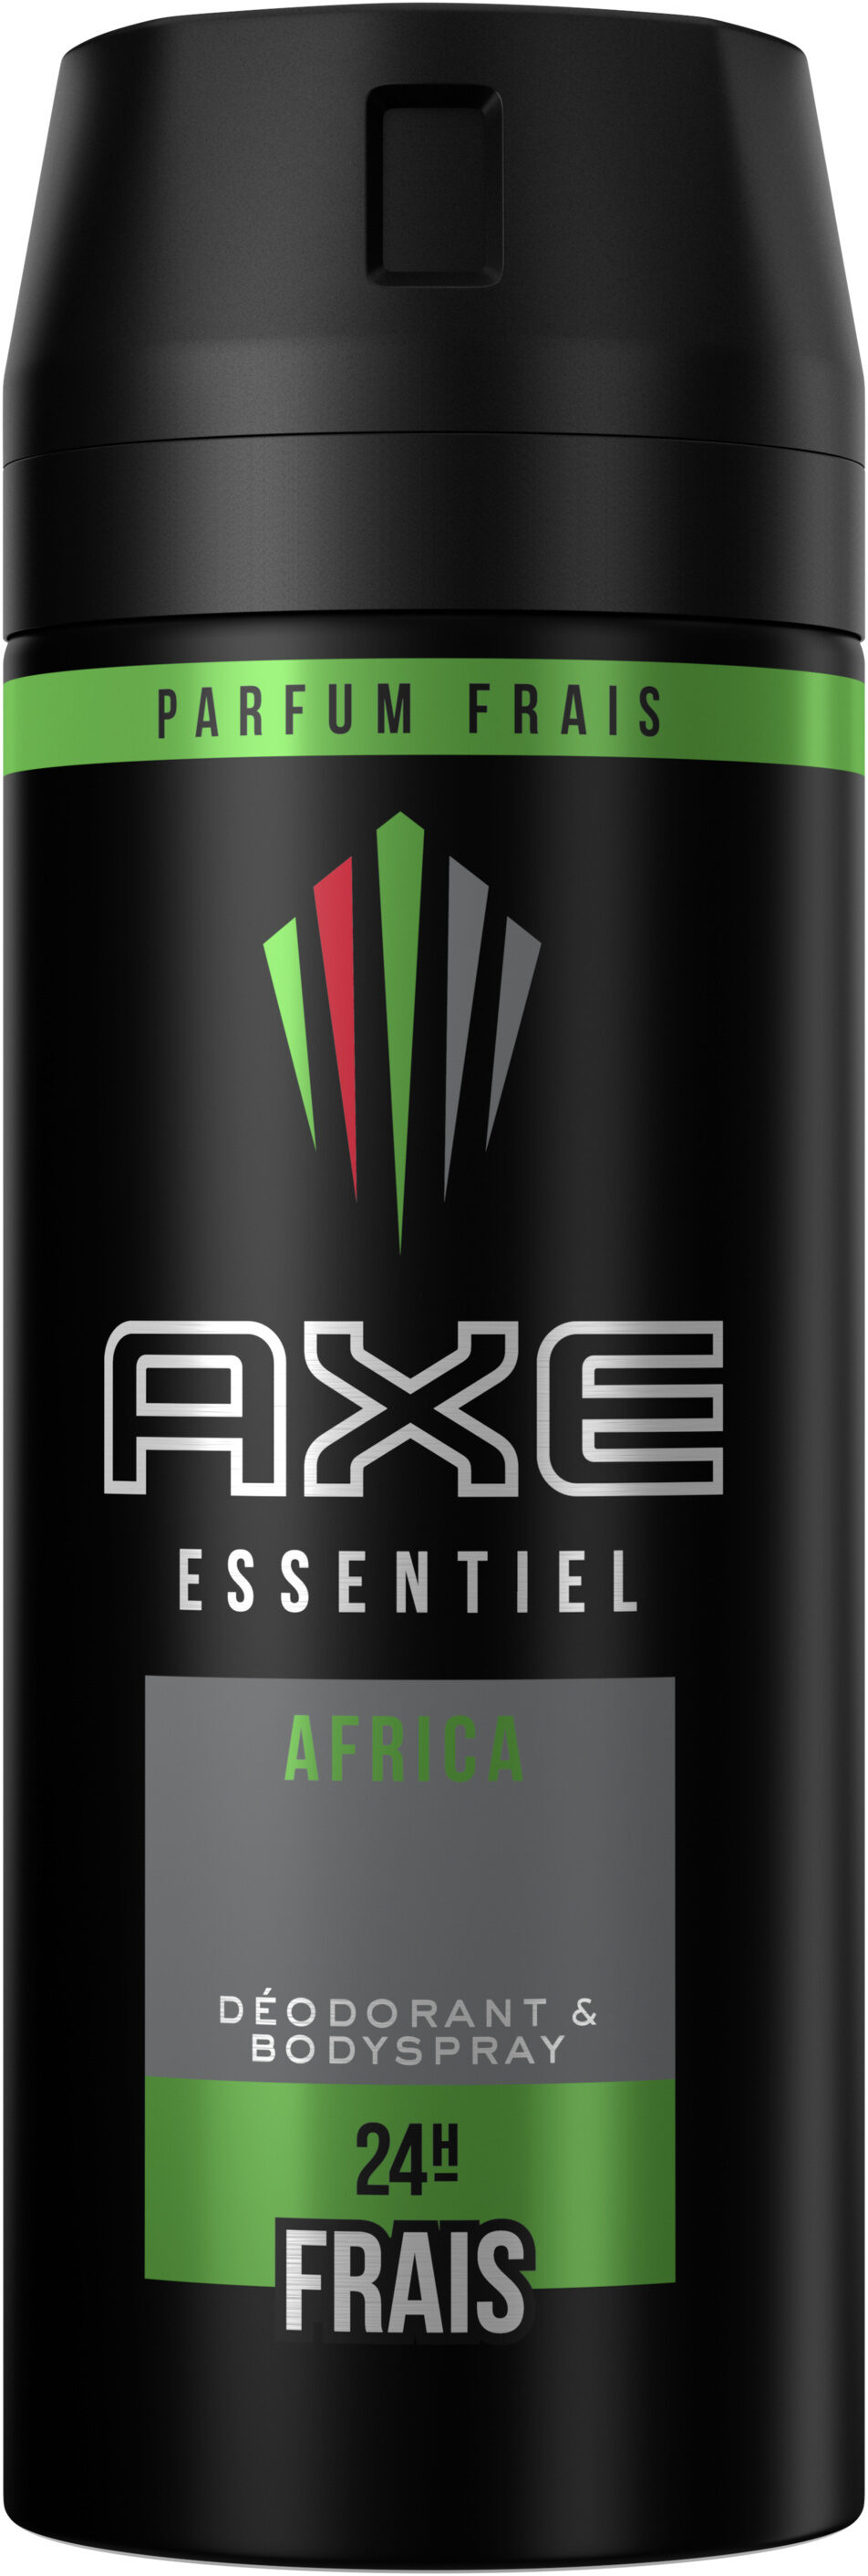 Axe Déodorant Homme Spray Africa 150ml - Produto - fr